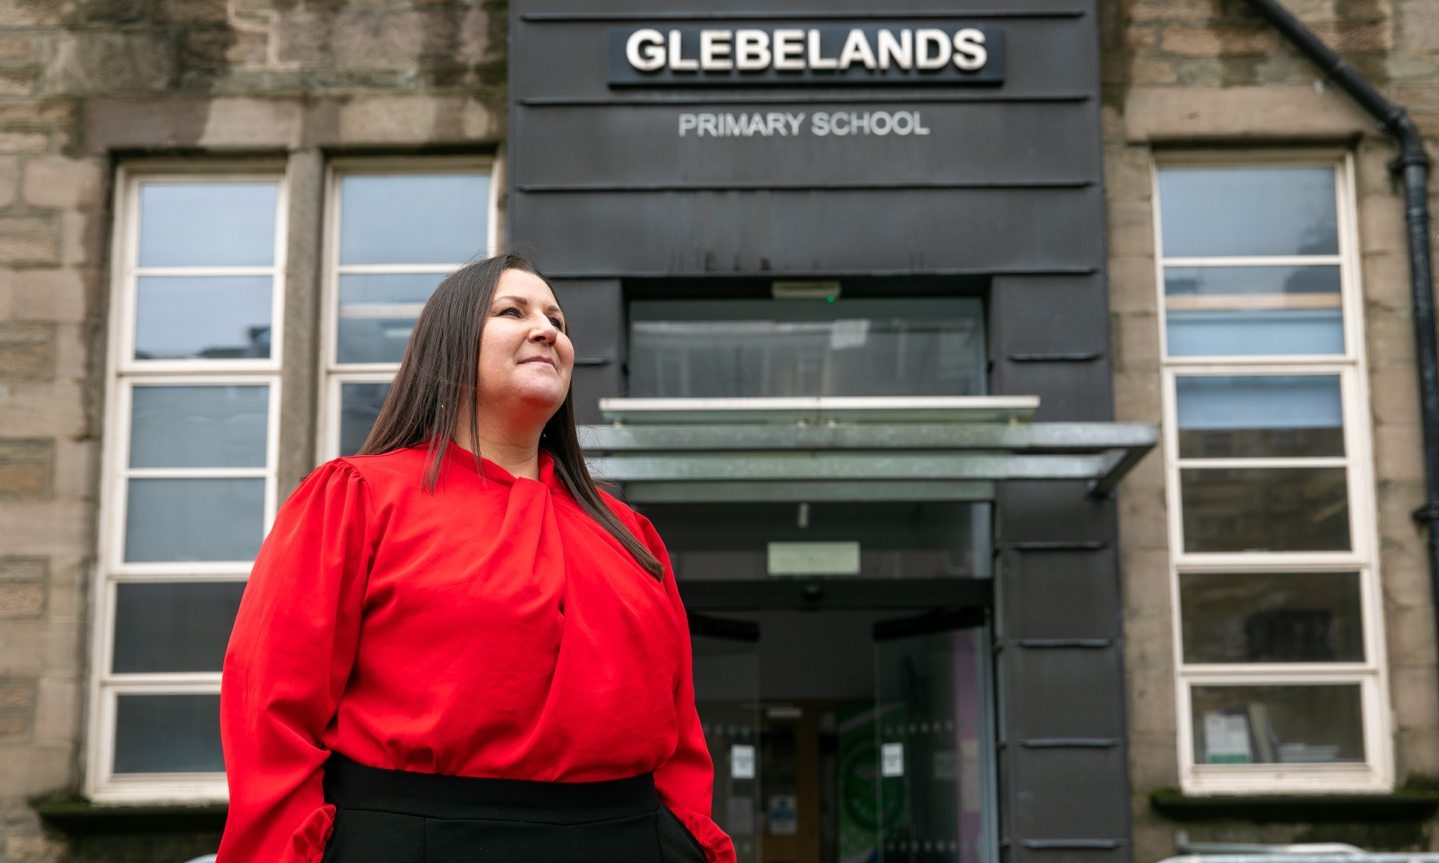 New Head Teacher of Glebelands Primary School in Dundee, Mrs Michelle Macleod.